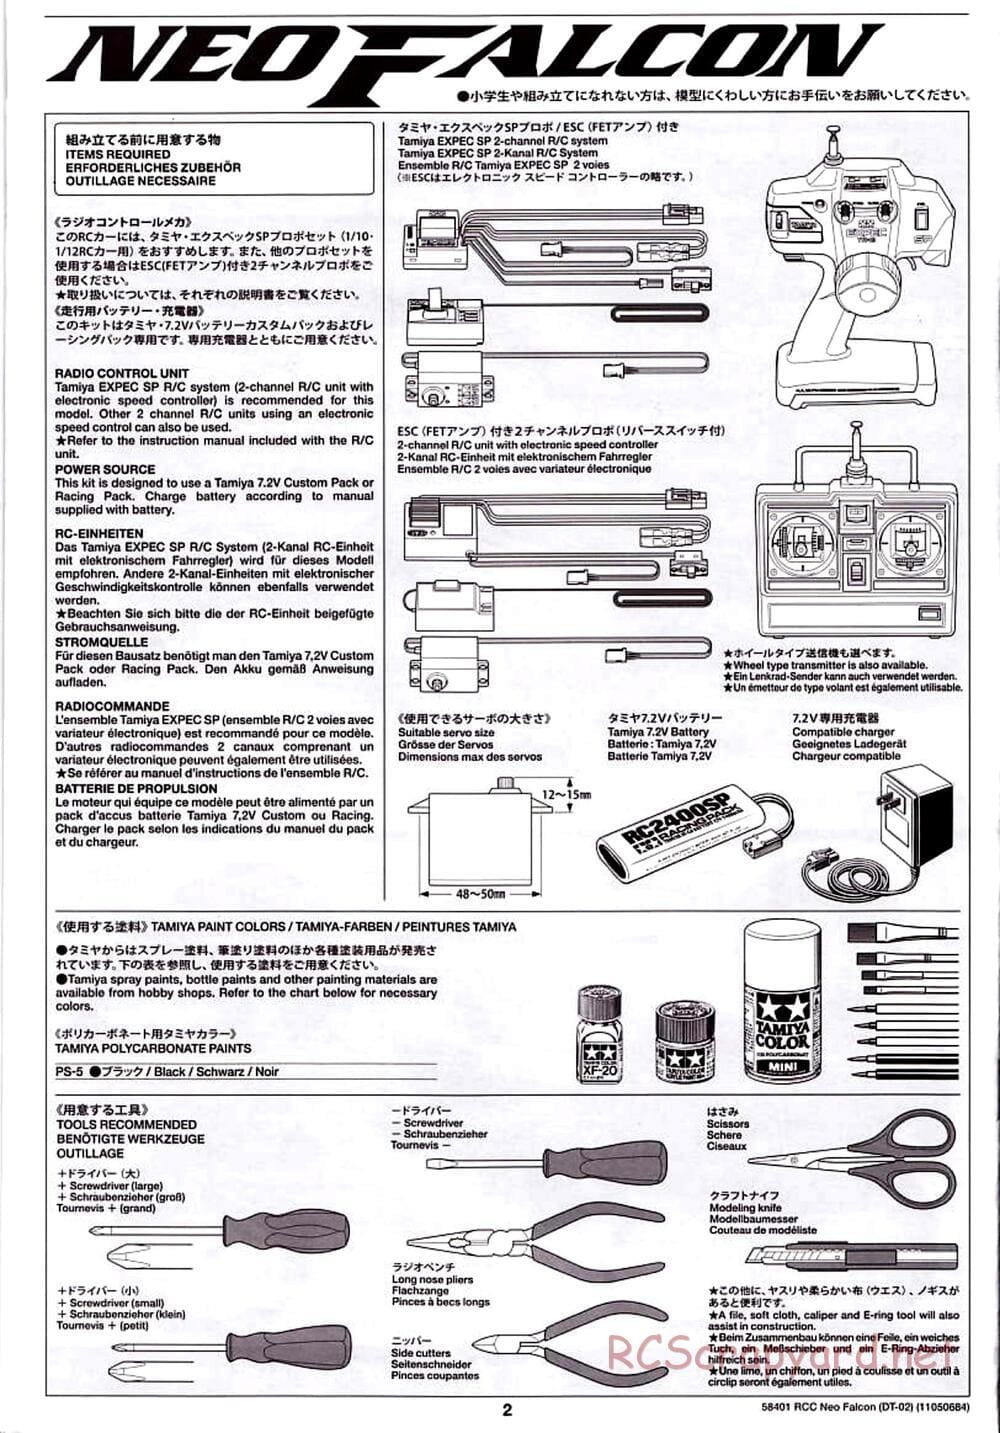 Tamiya - Neo Falcon Chassis - Manual - Page 2